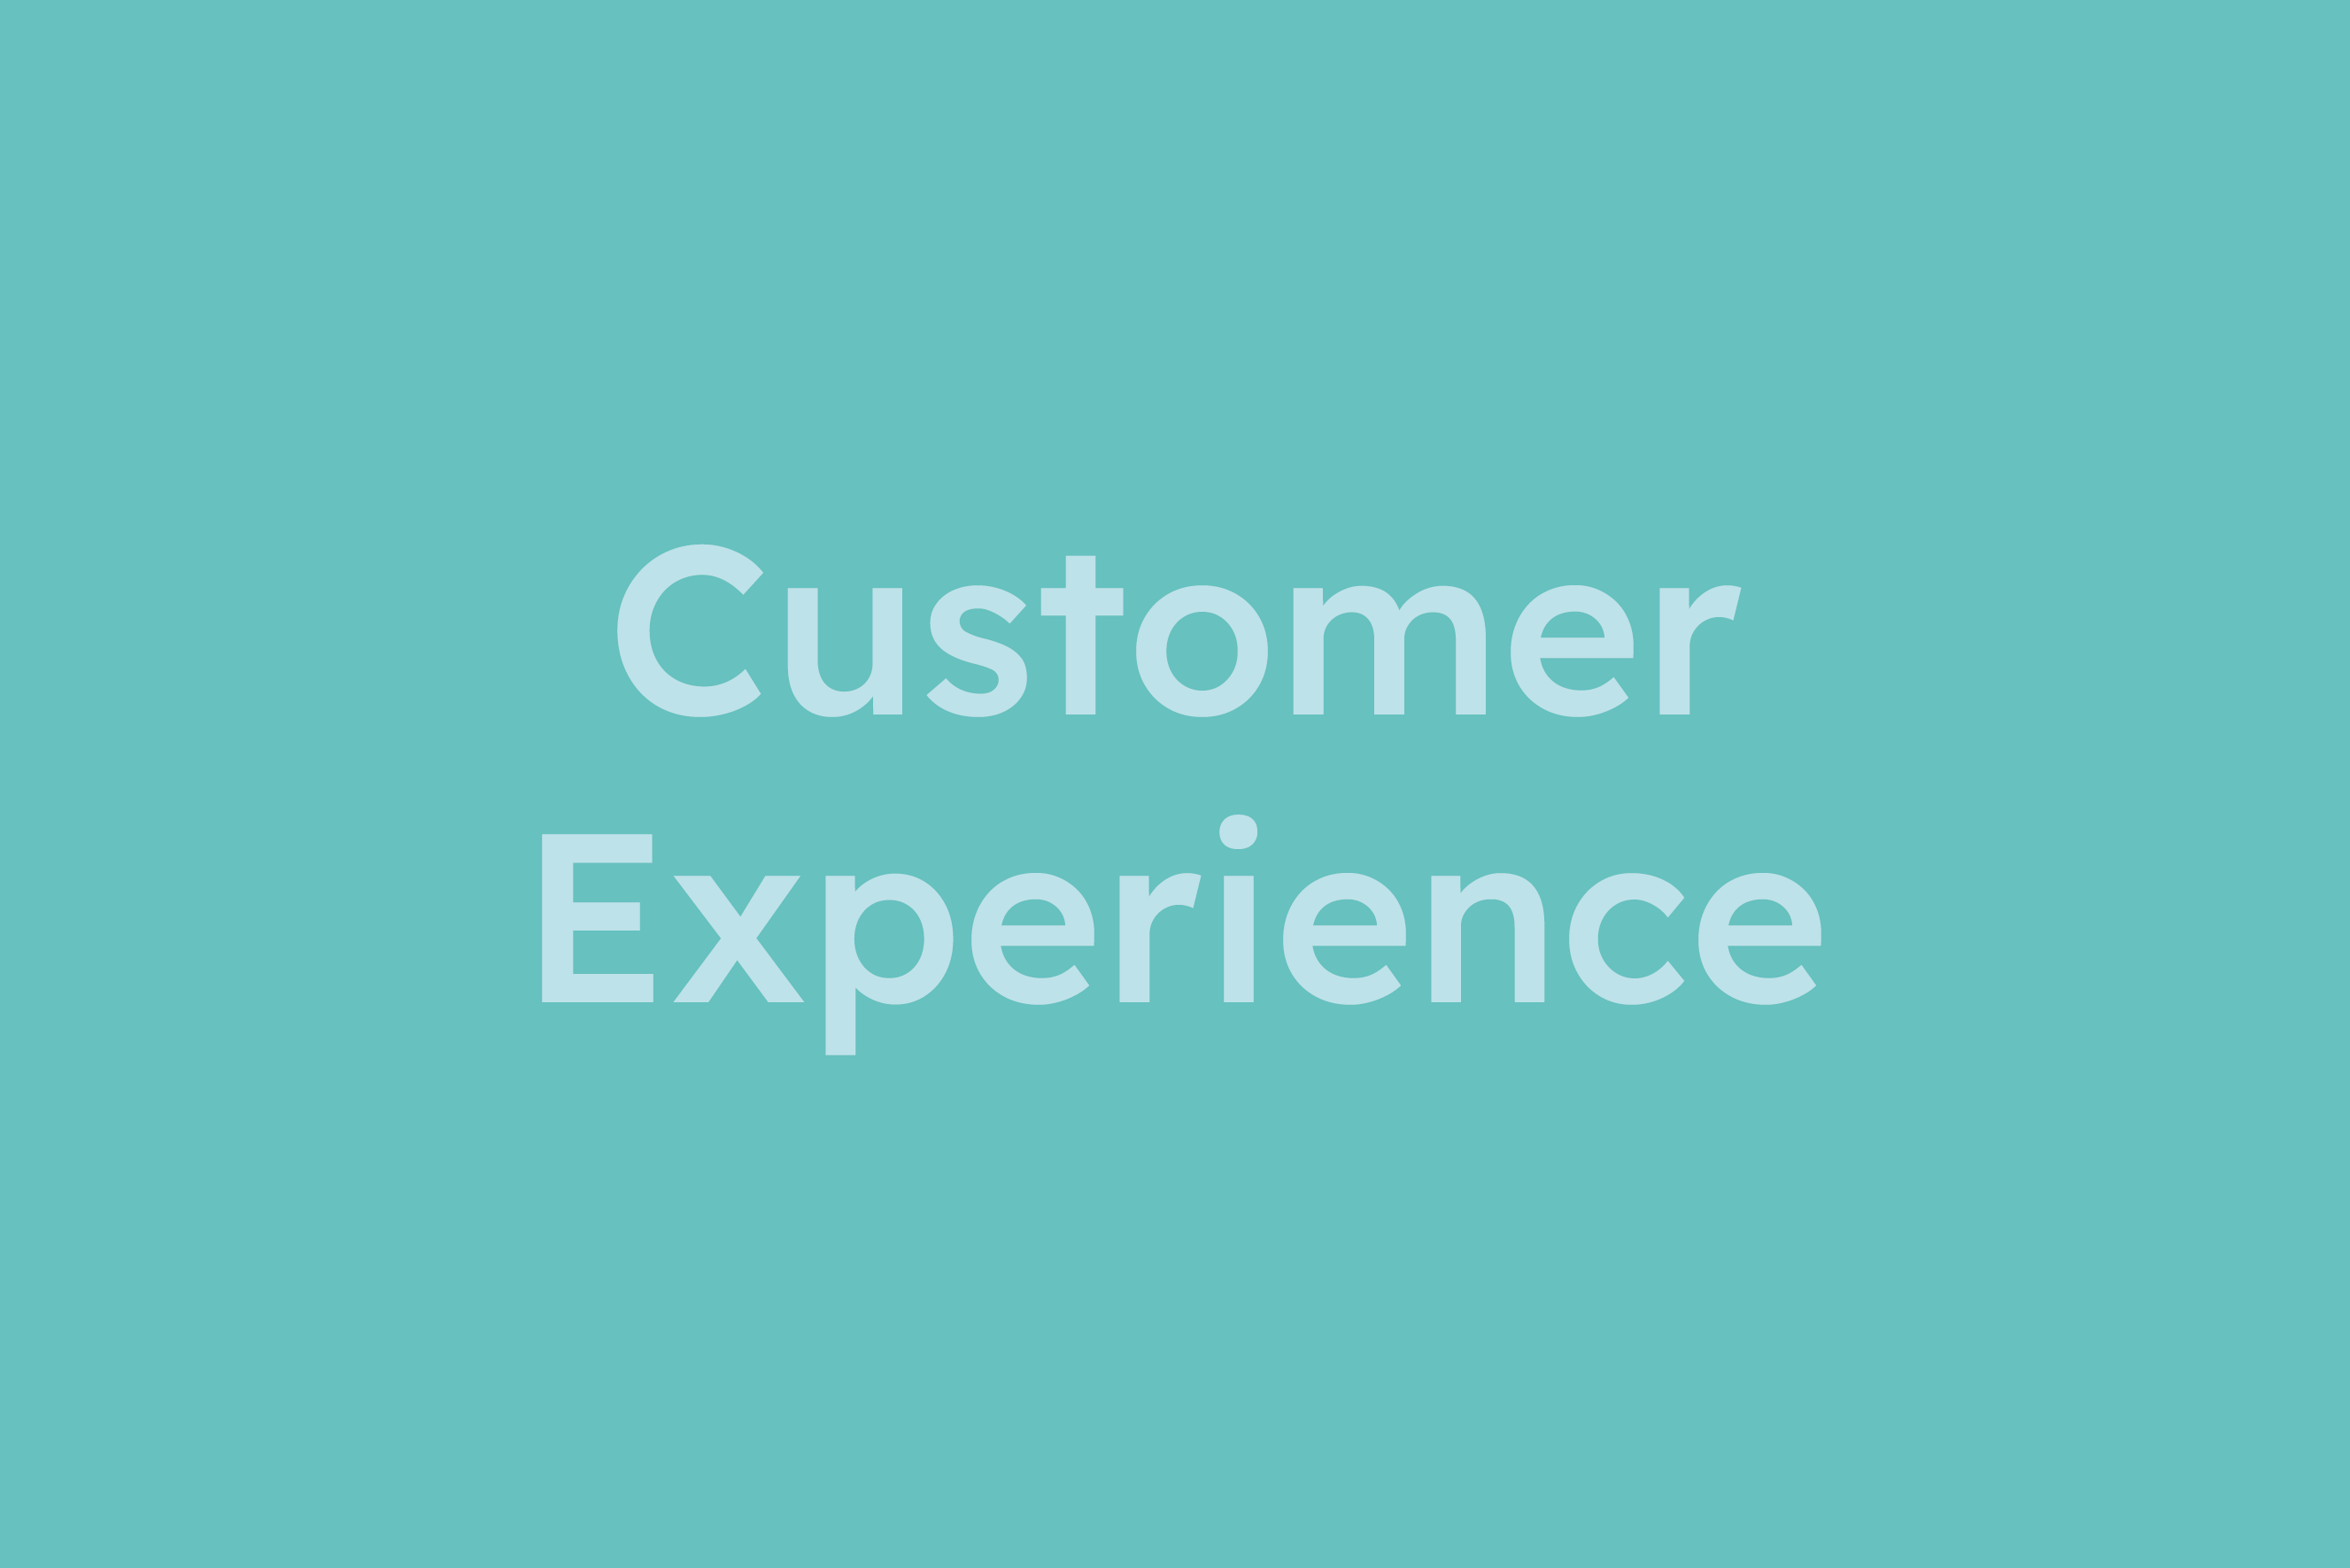 Customer Experience erklärt im Glossar von Campaign